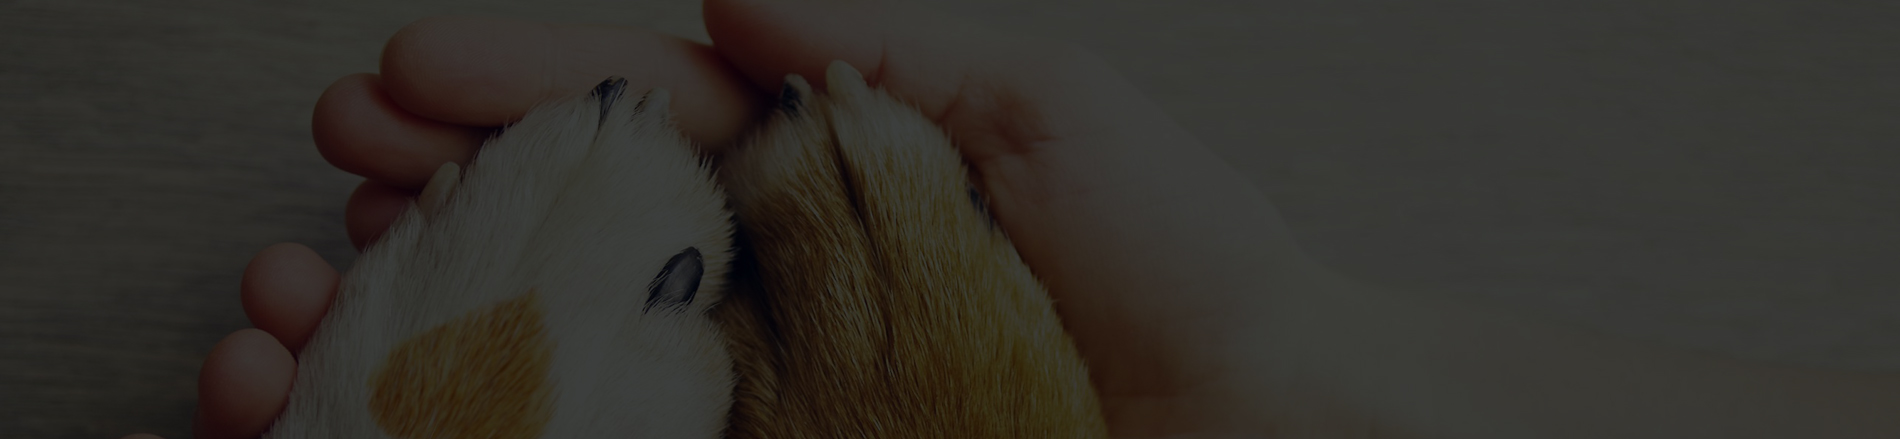 image de pattes de chien avec une main humaine